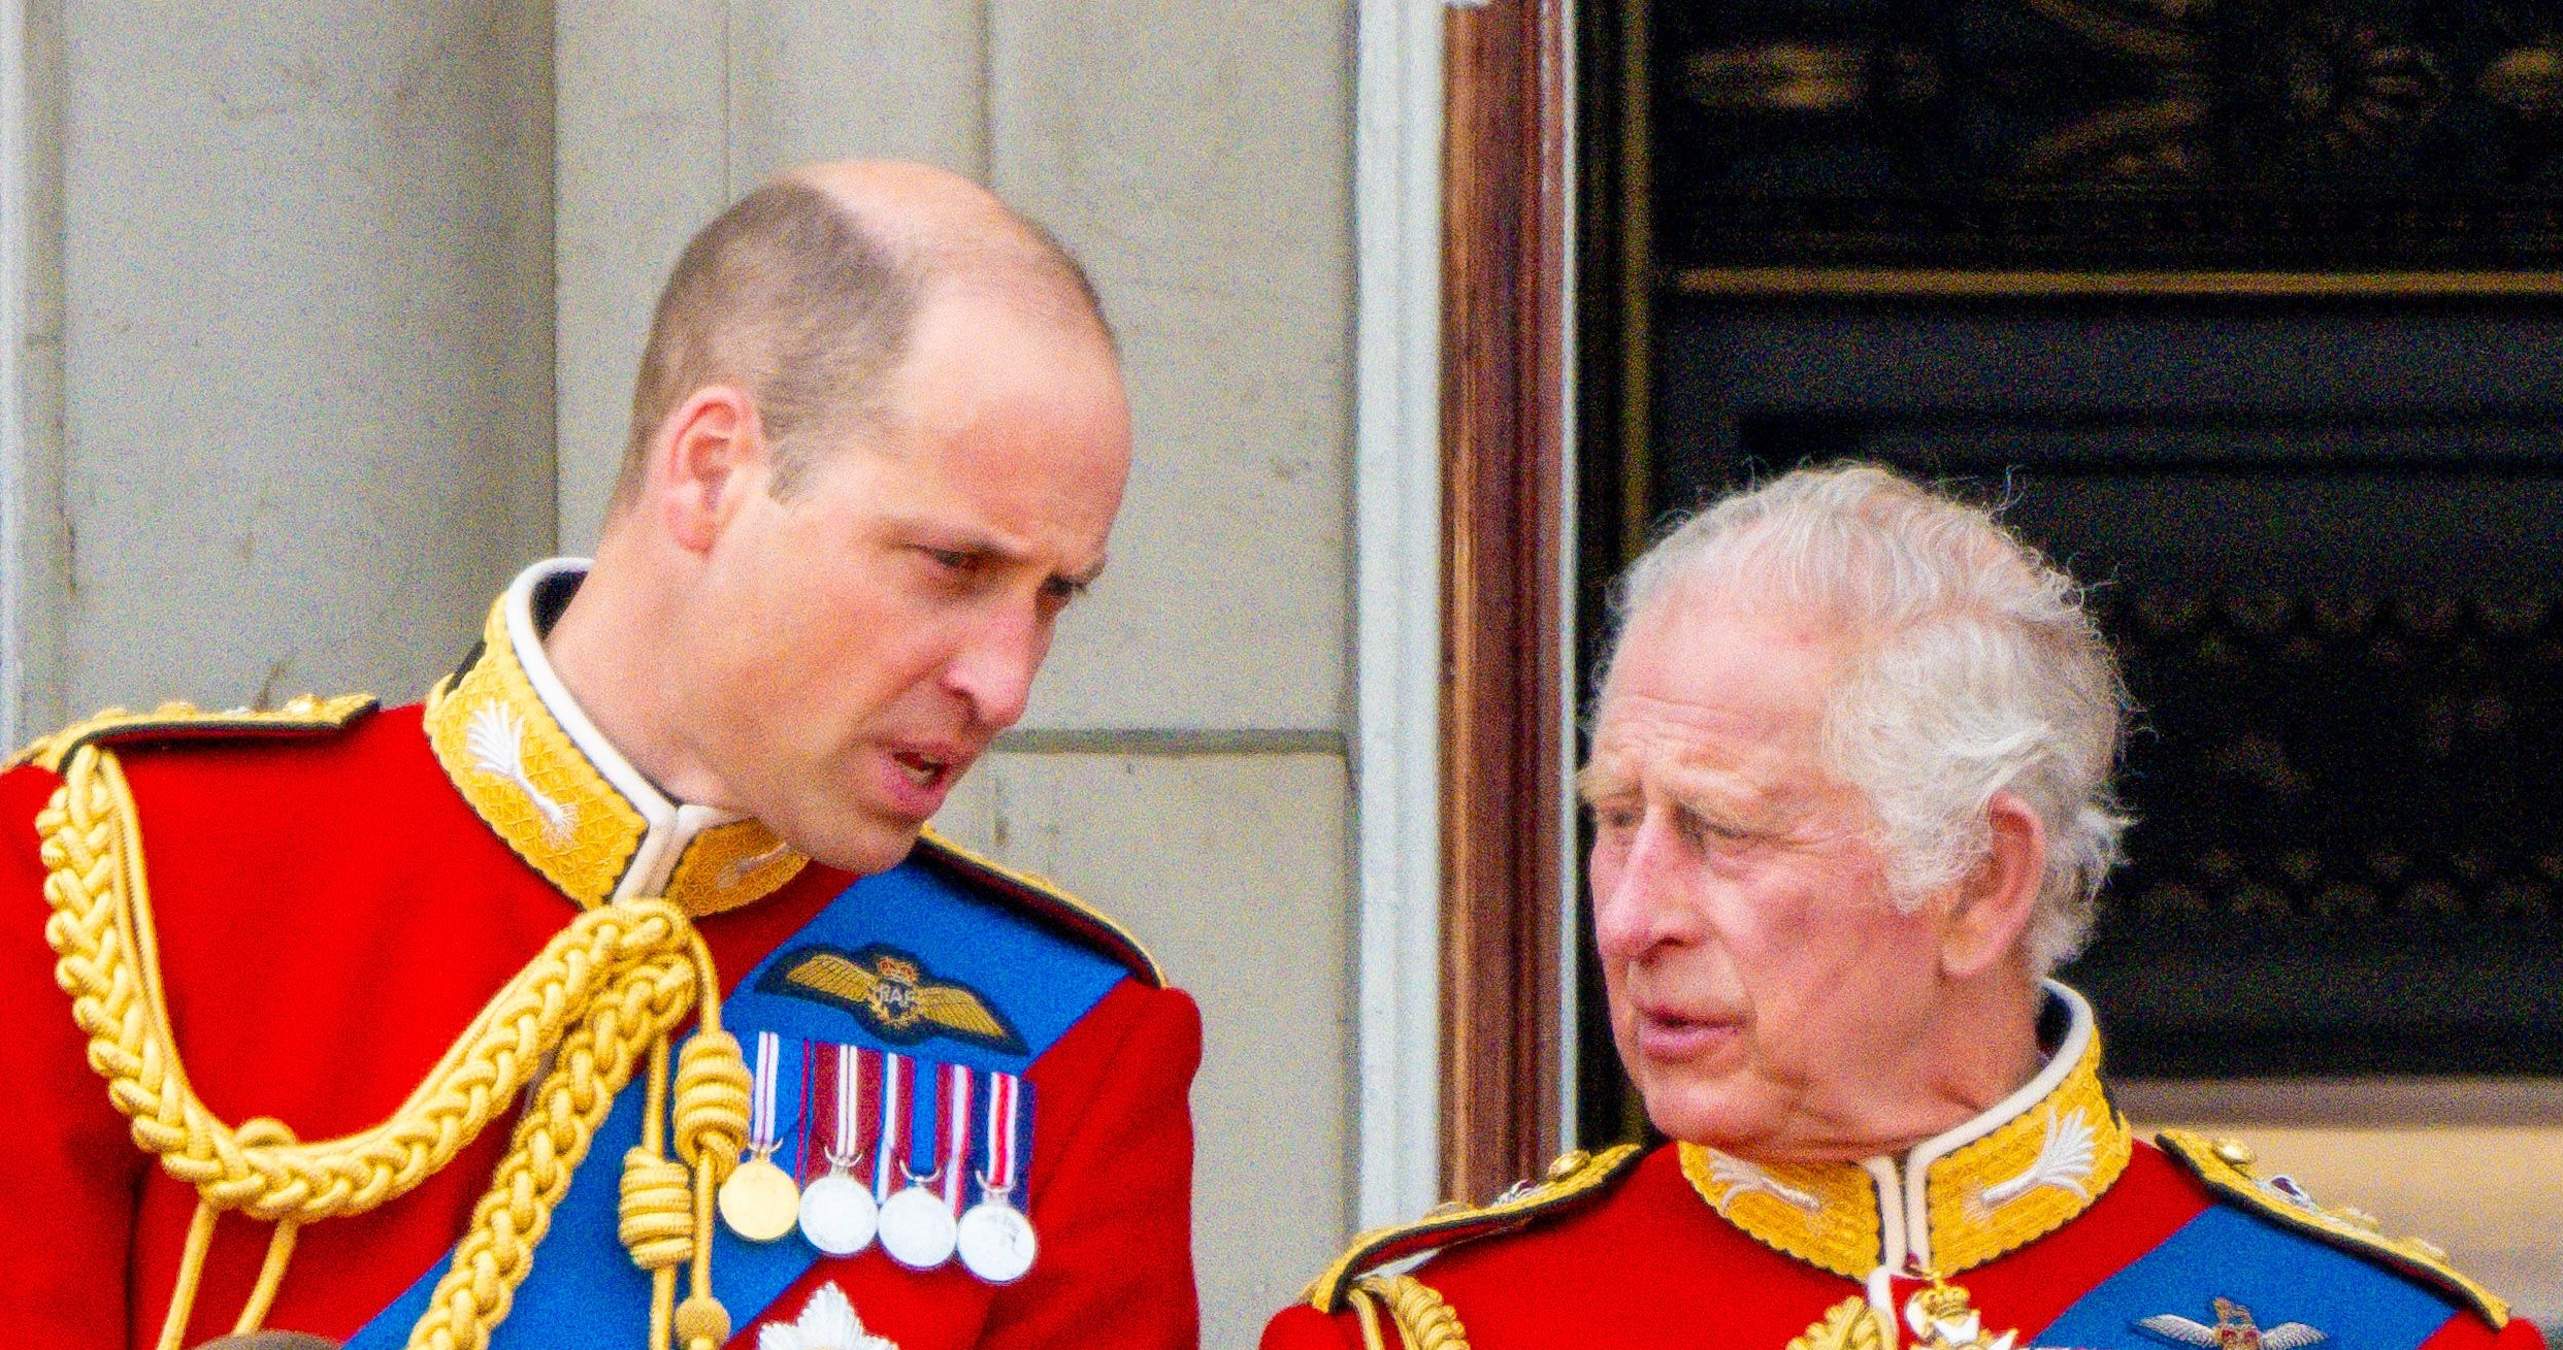 El Reino Unido avergonzado de sus royals, la escapada secreta que indigna